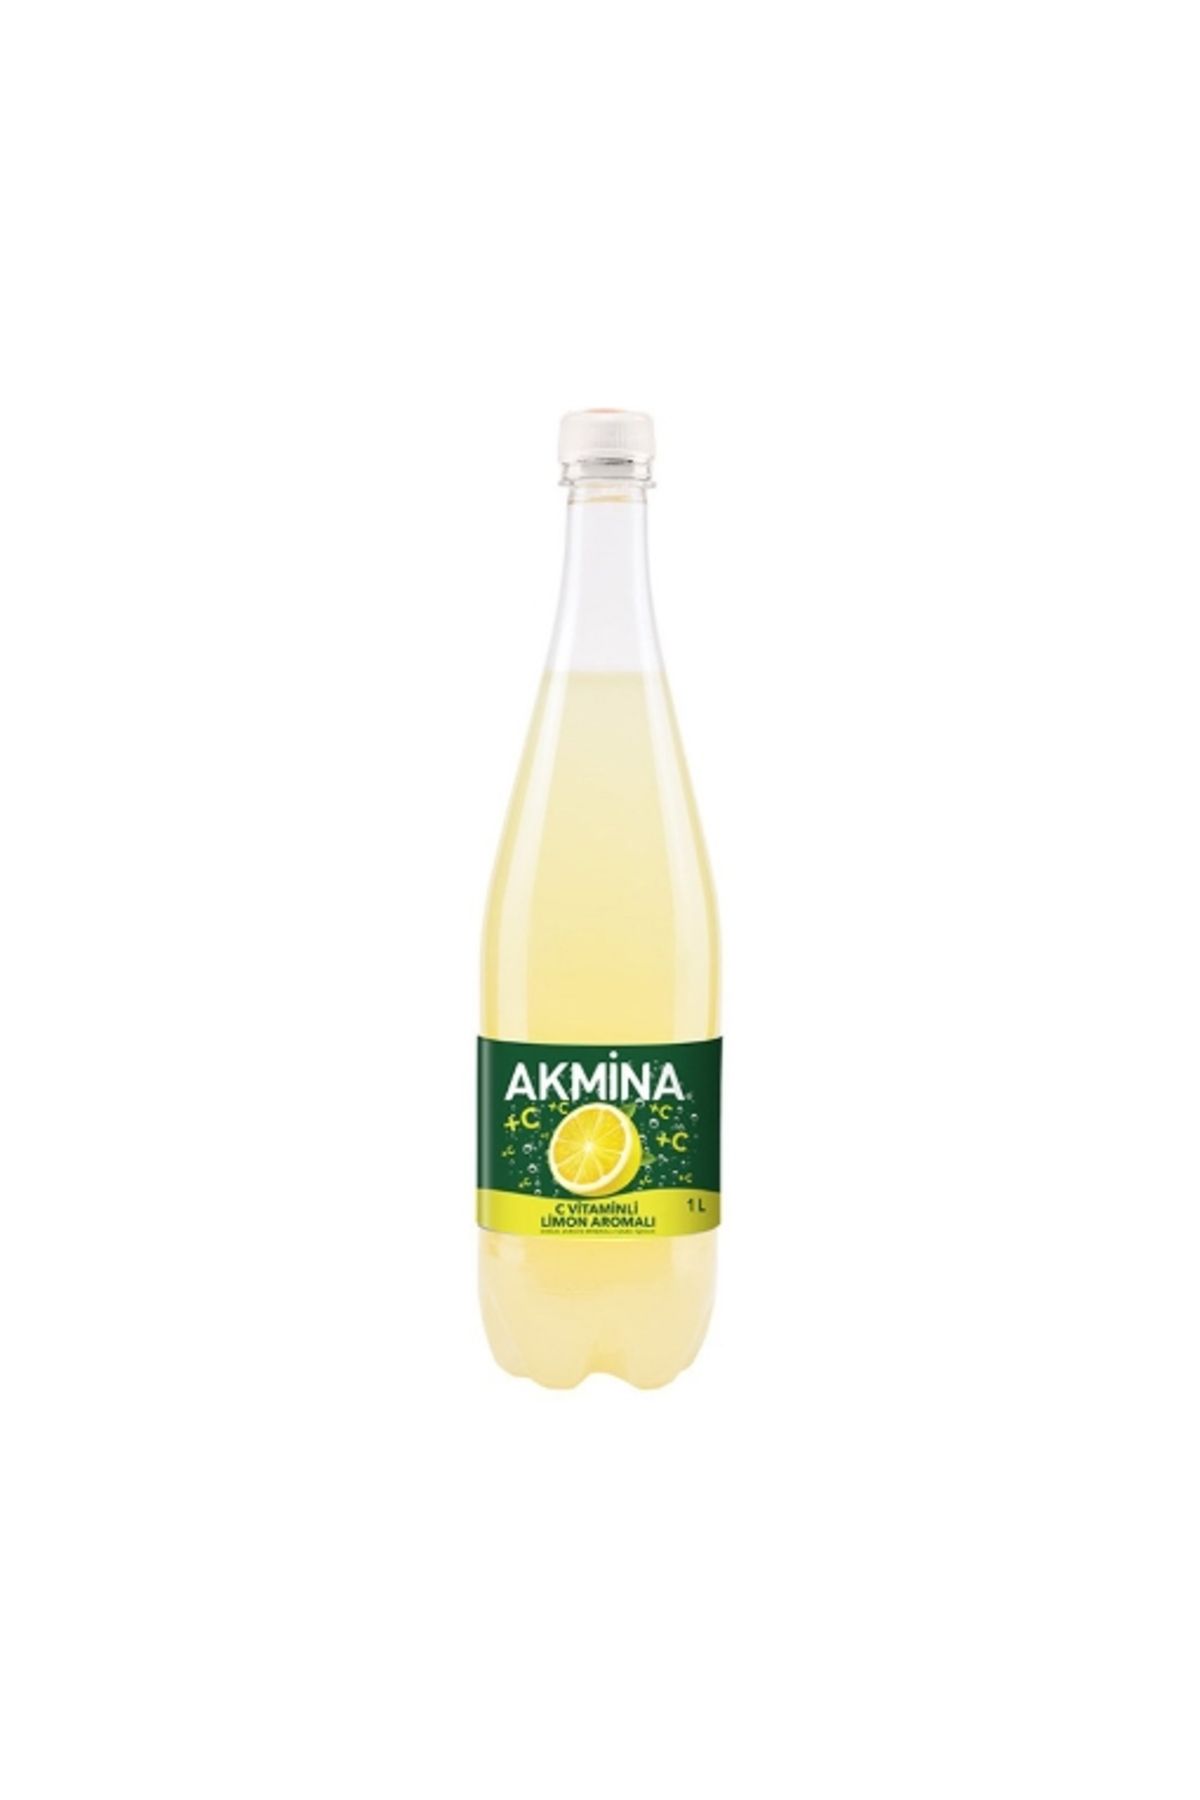 Akmina C Vit. Limonlu Maden Suyu 1 Lt. (meyveli soda) (12'li)